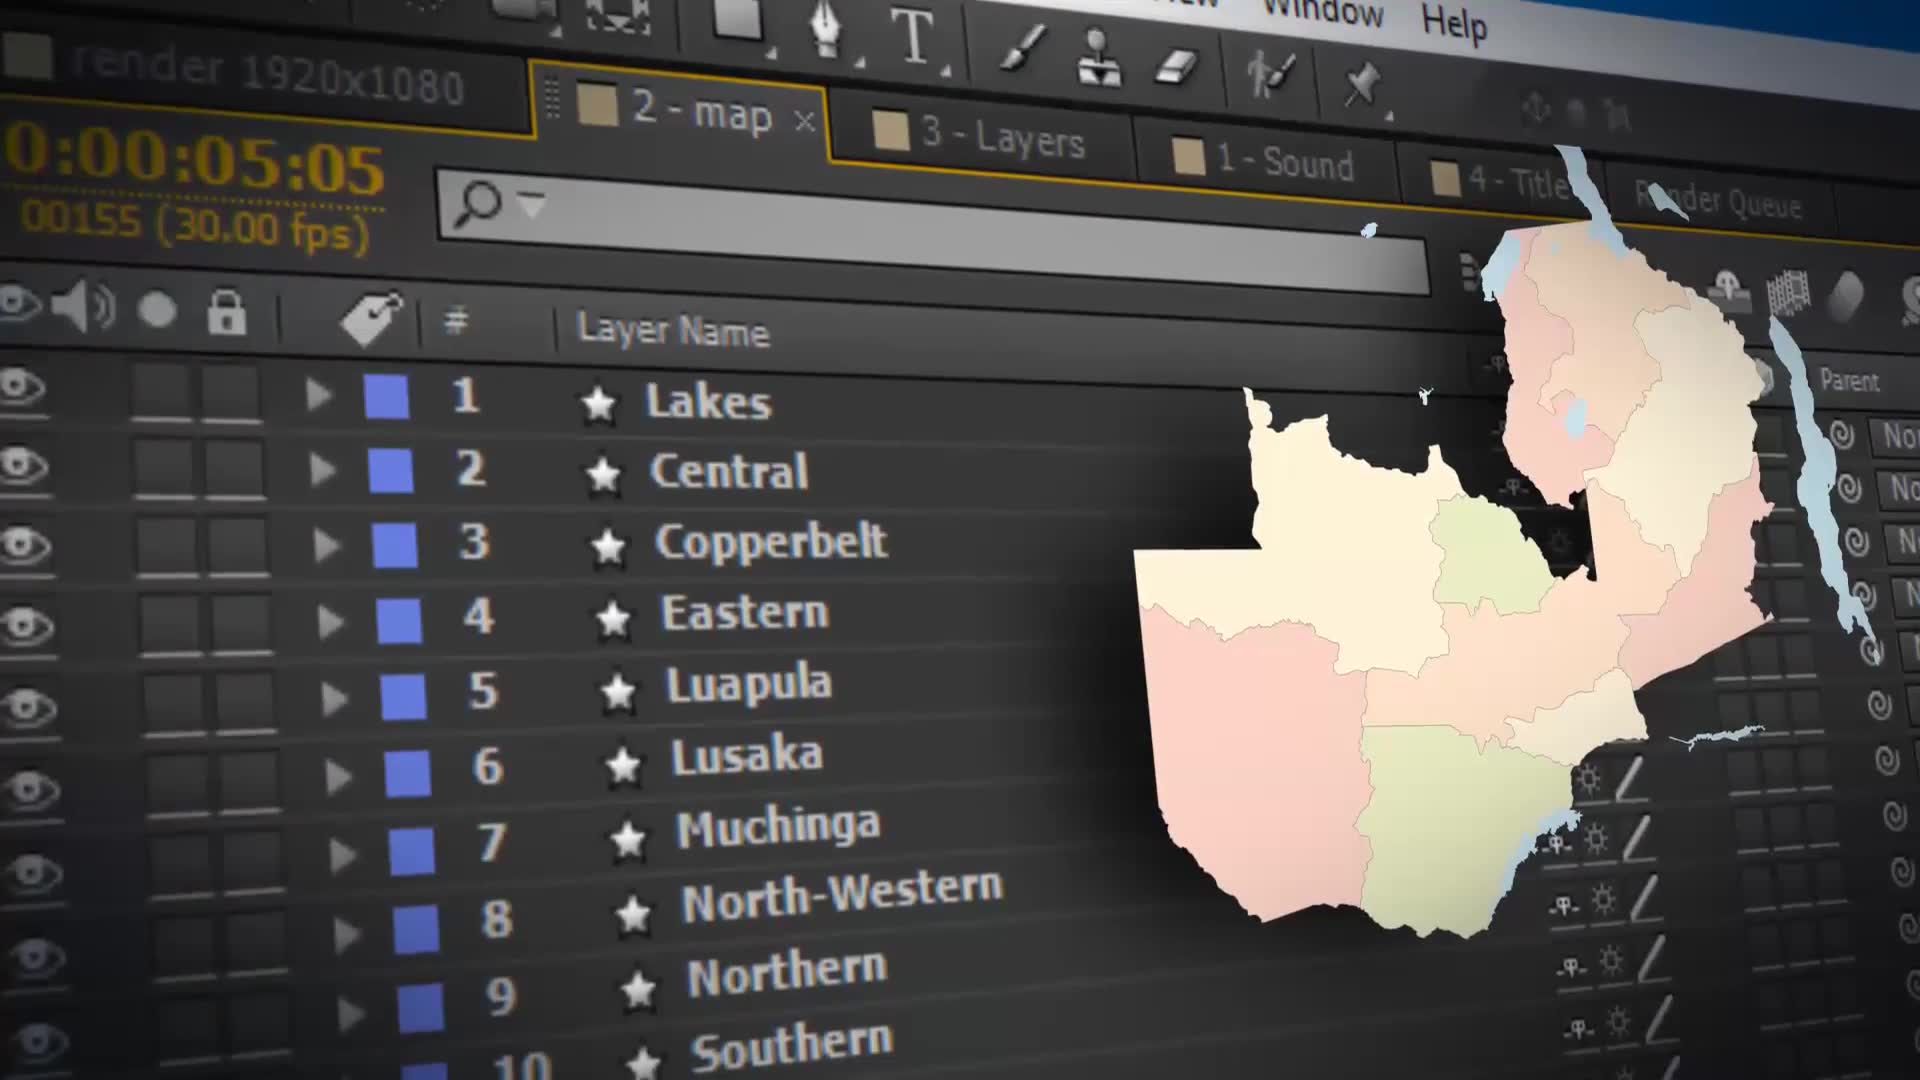 Zambia Map Republic of Zambia Map Kit Videohive 25052822 After Effects Image 2